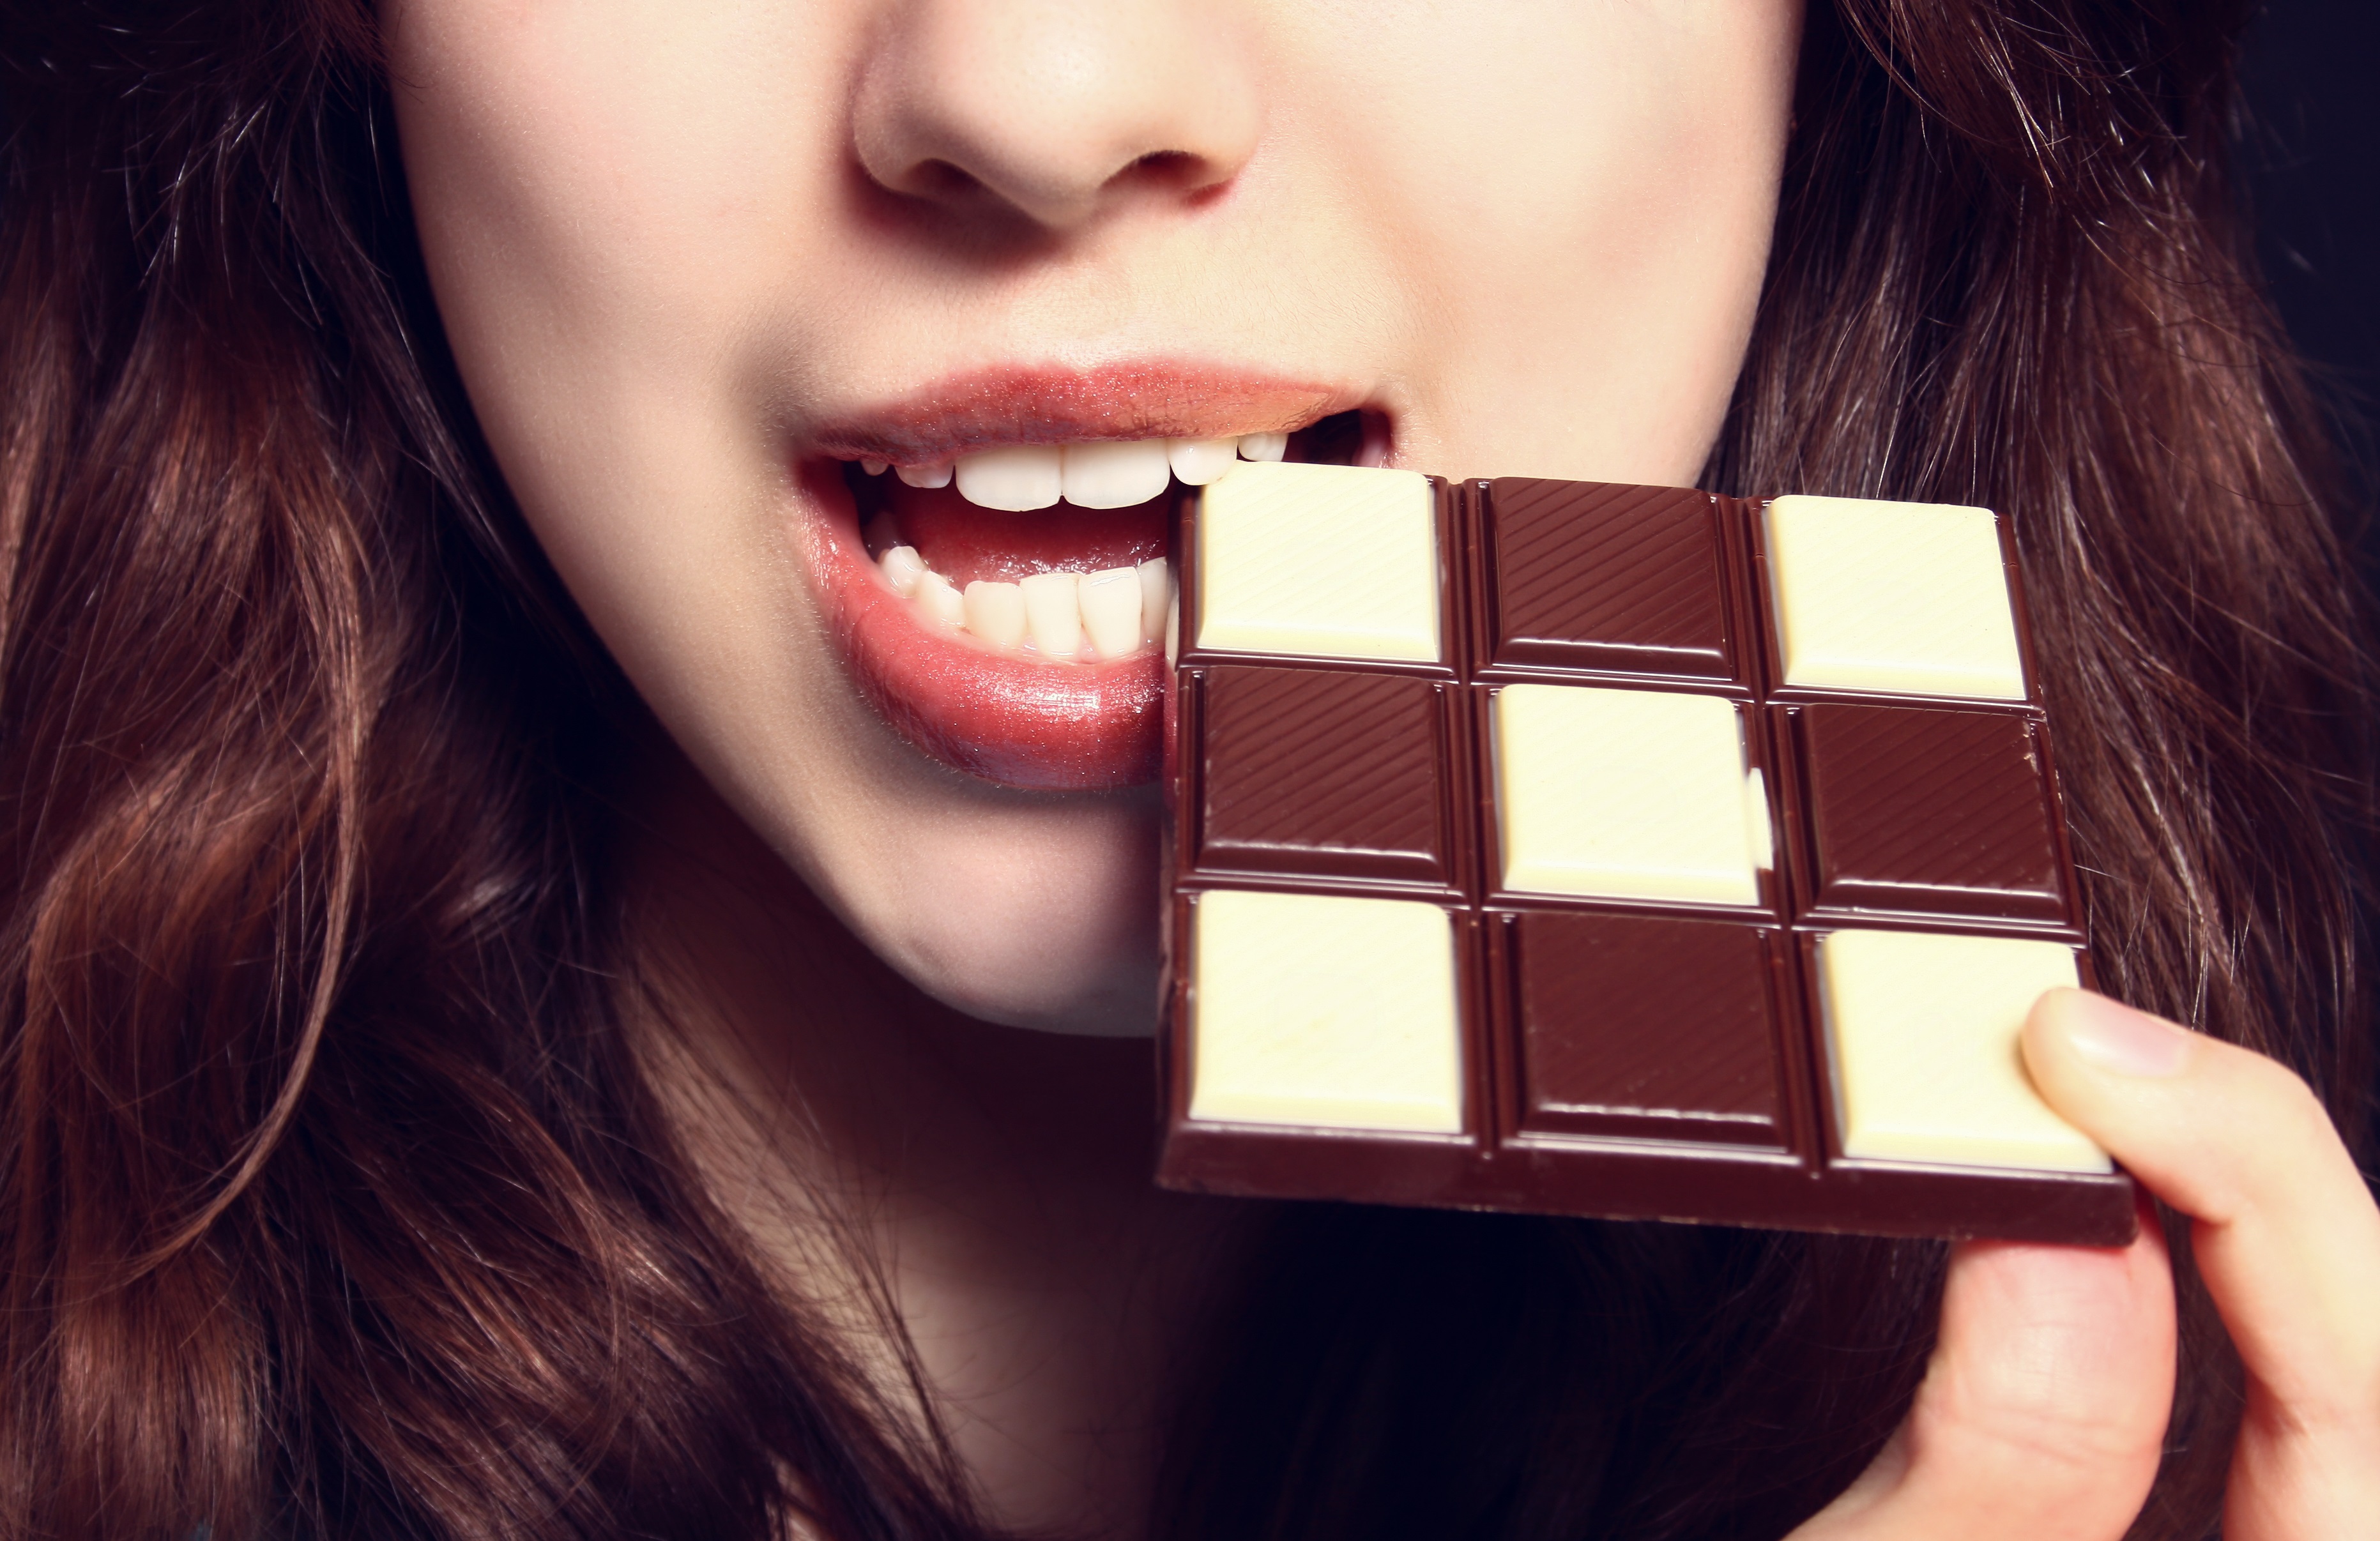 Видео с шоколадкой. Девушка в шоколаде. Девушка с шоколадкой. Девушка ест шоколад. Фотосессия с шоколадом.